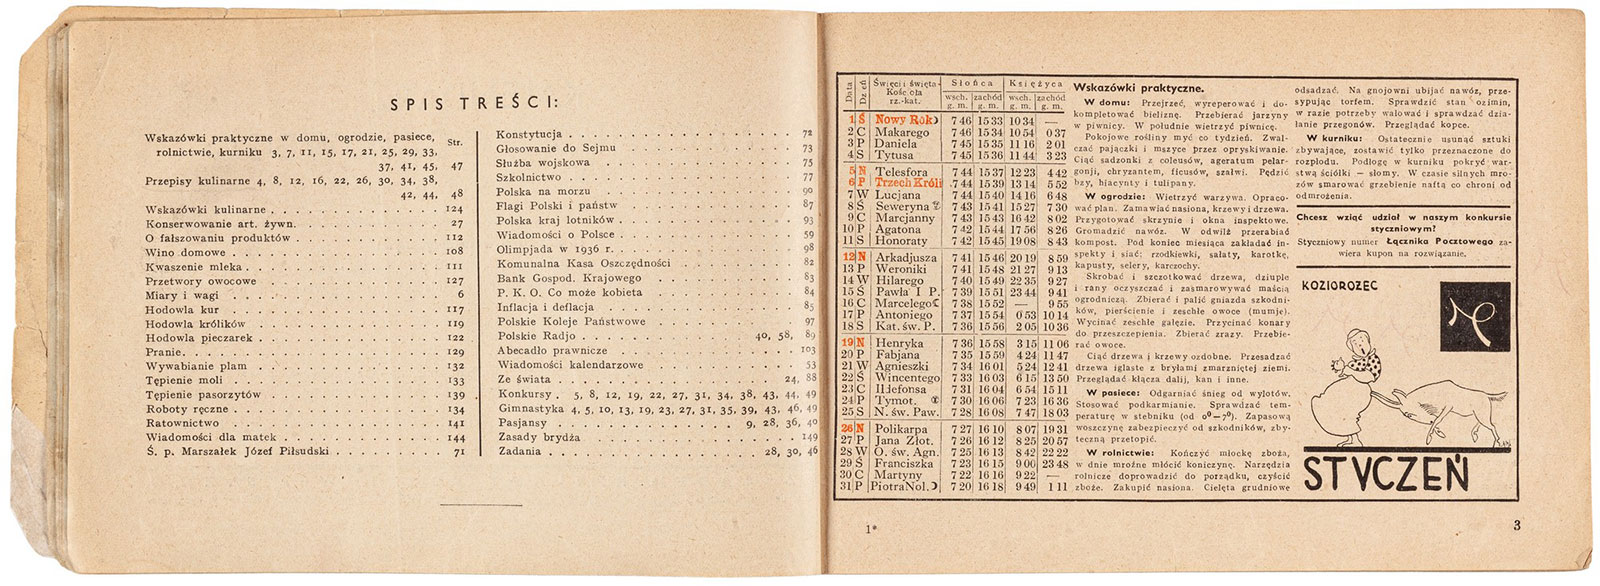 Kalendarz na rok 1936